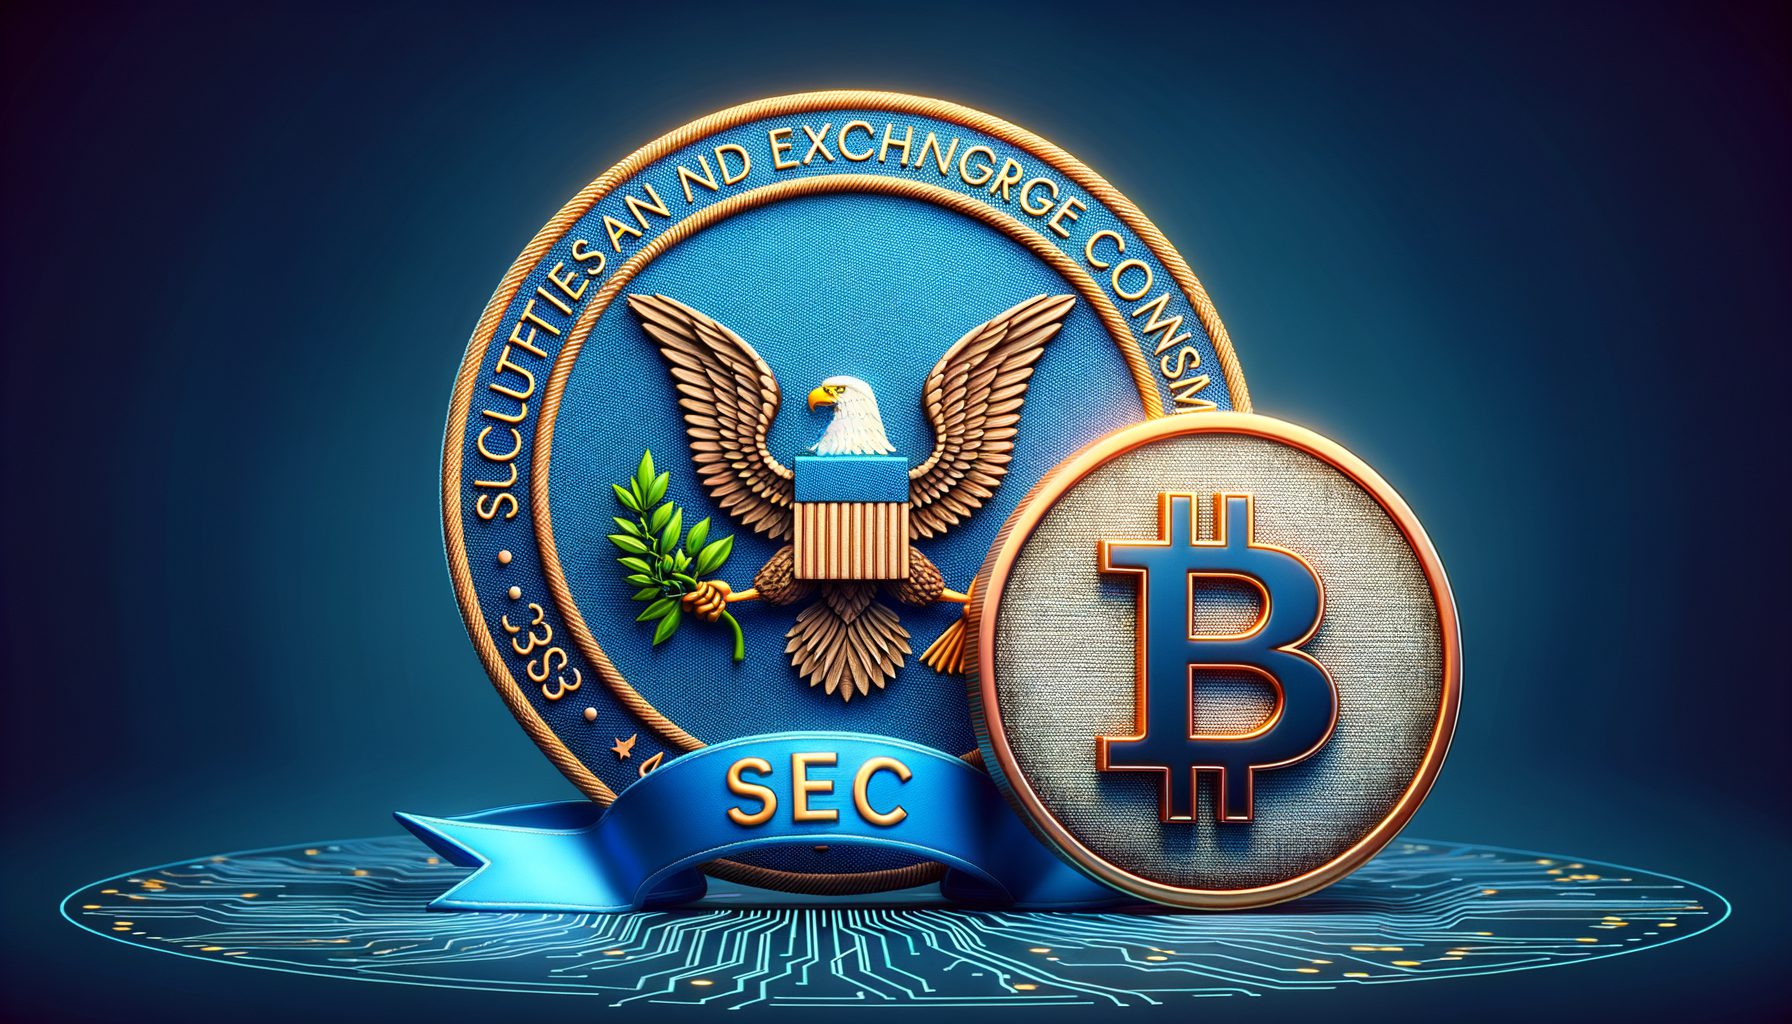 SEC قصد دارد از شکایت علیه صندوق بدهی شرکت رمزنگاری صرف نظر کند